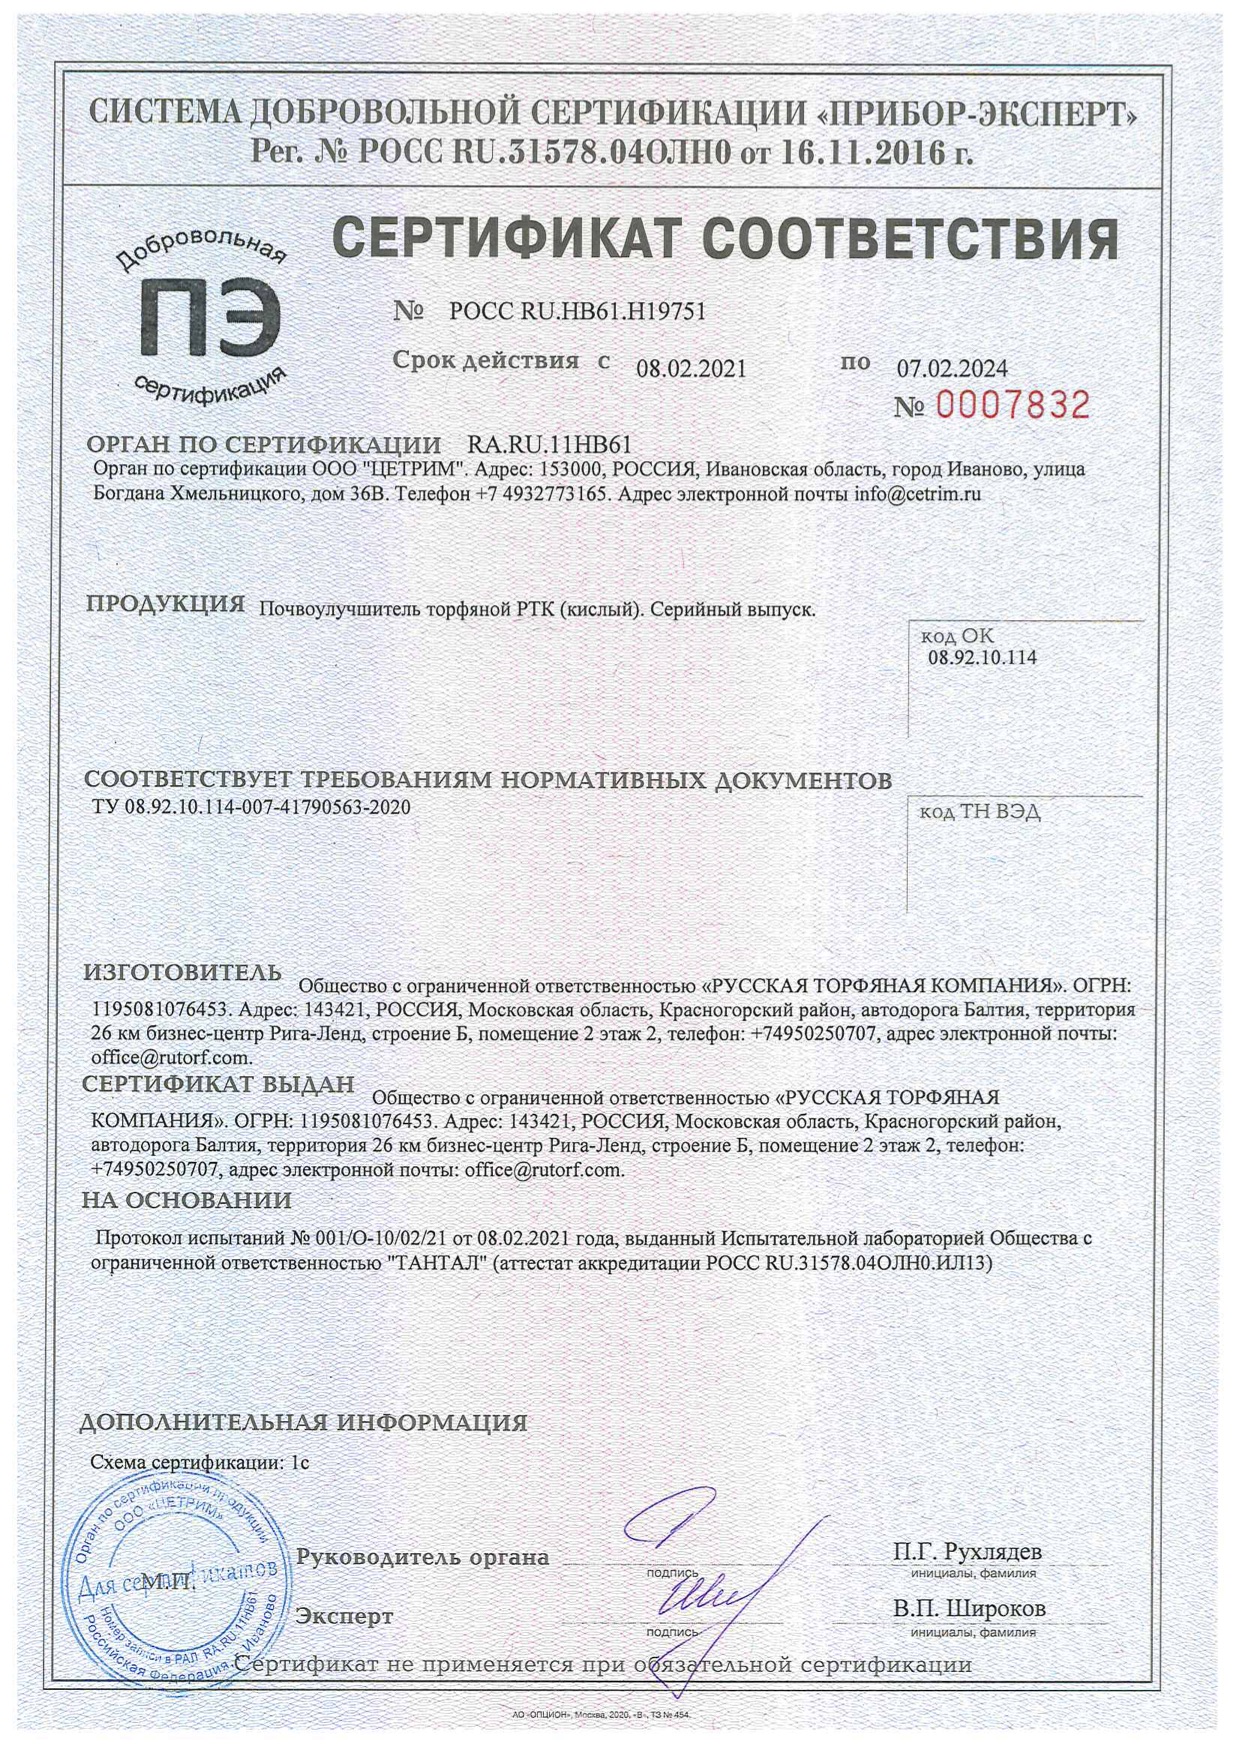 Сертификат соответствия почвоулучшитель торфяной РТК кислый